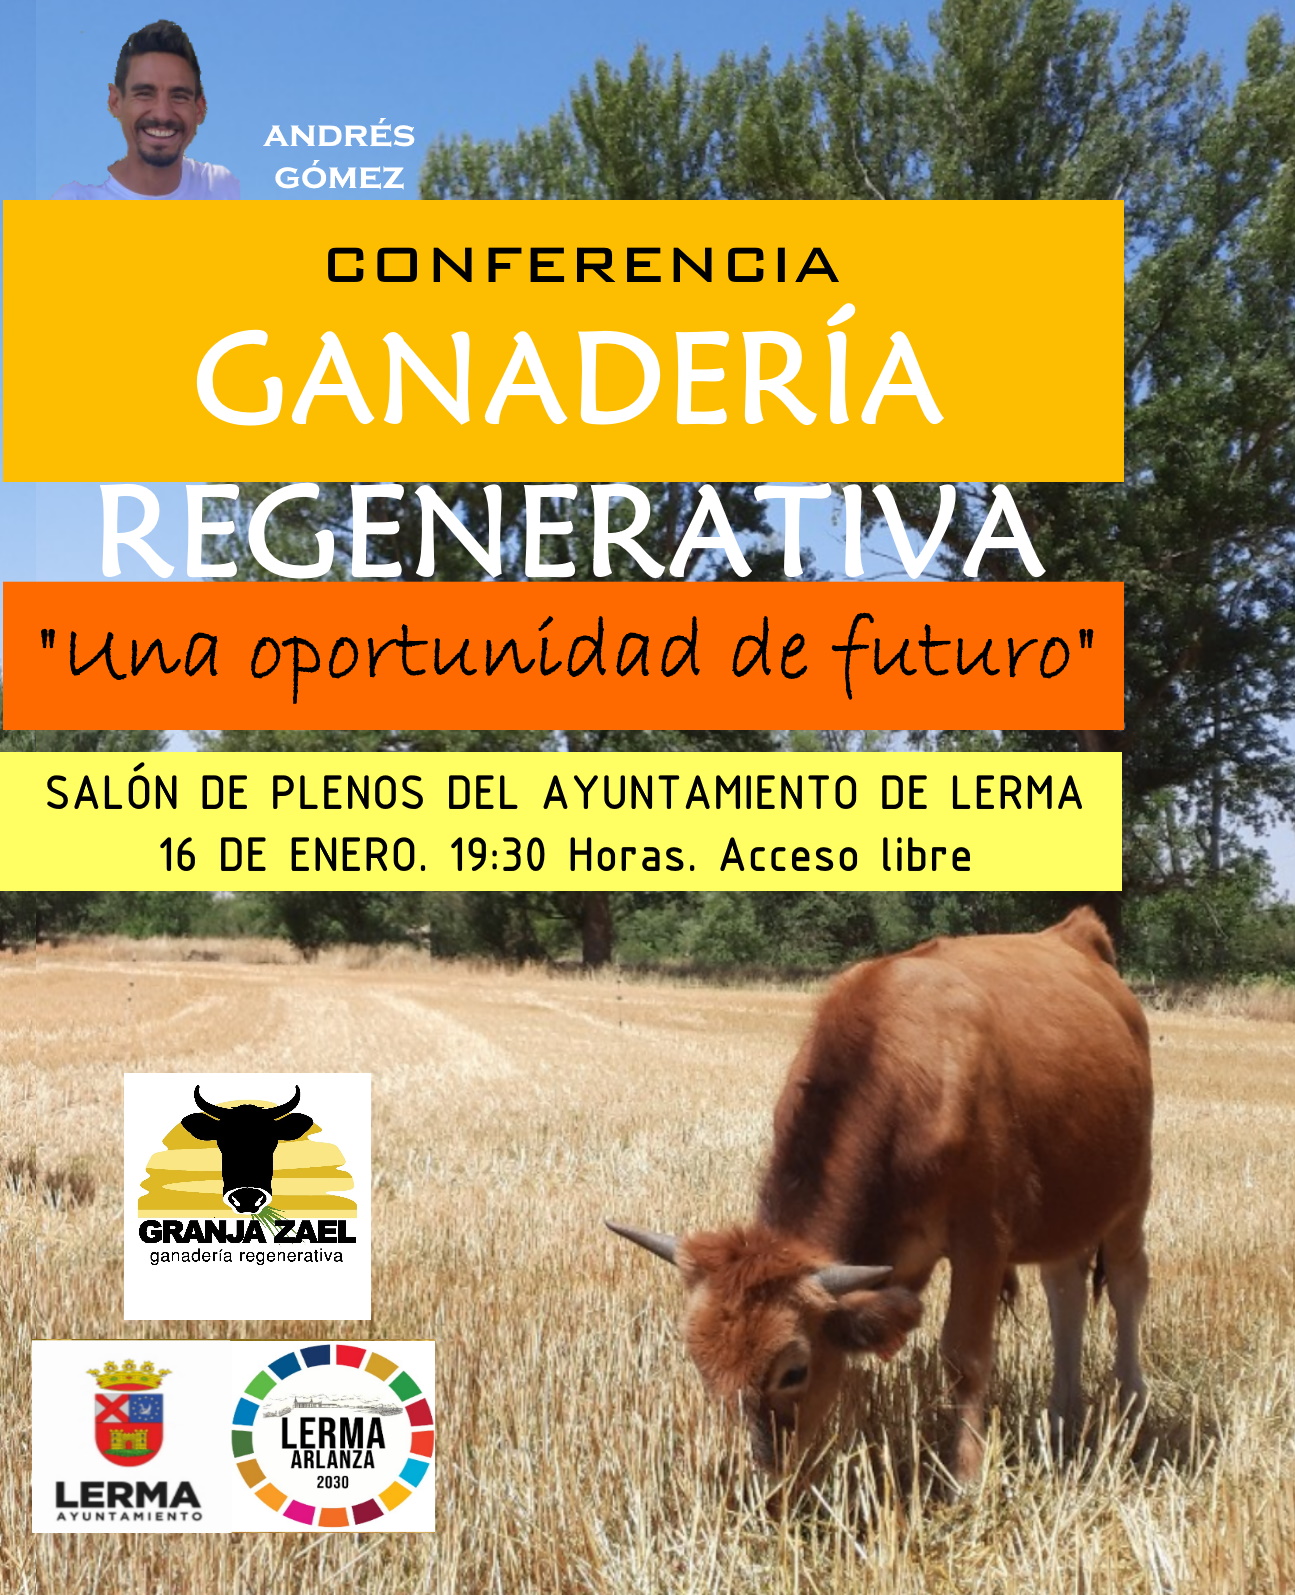 Conferenicia "GANADERÍA REGENERATIVA"